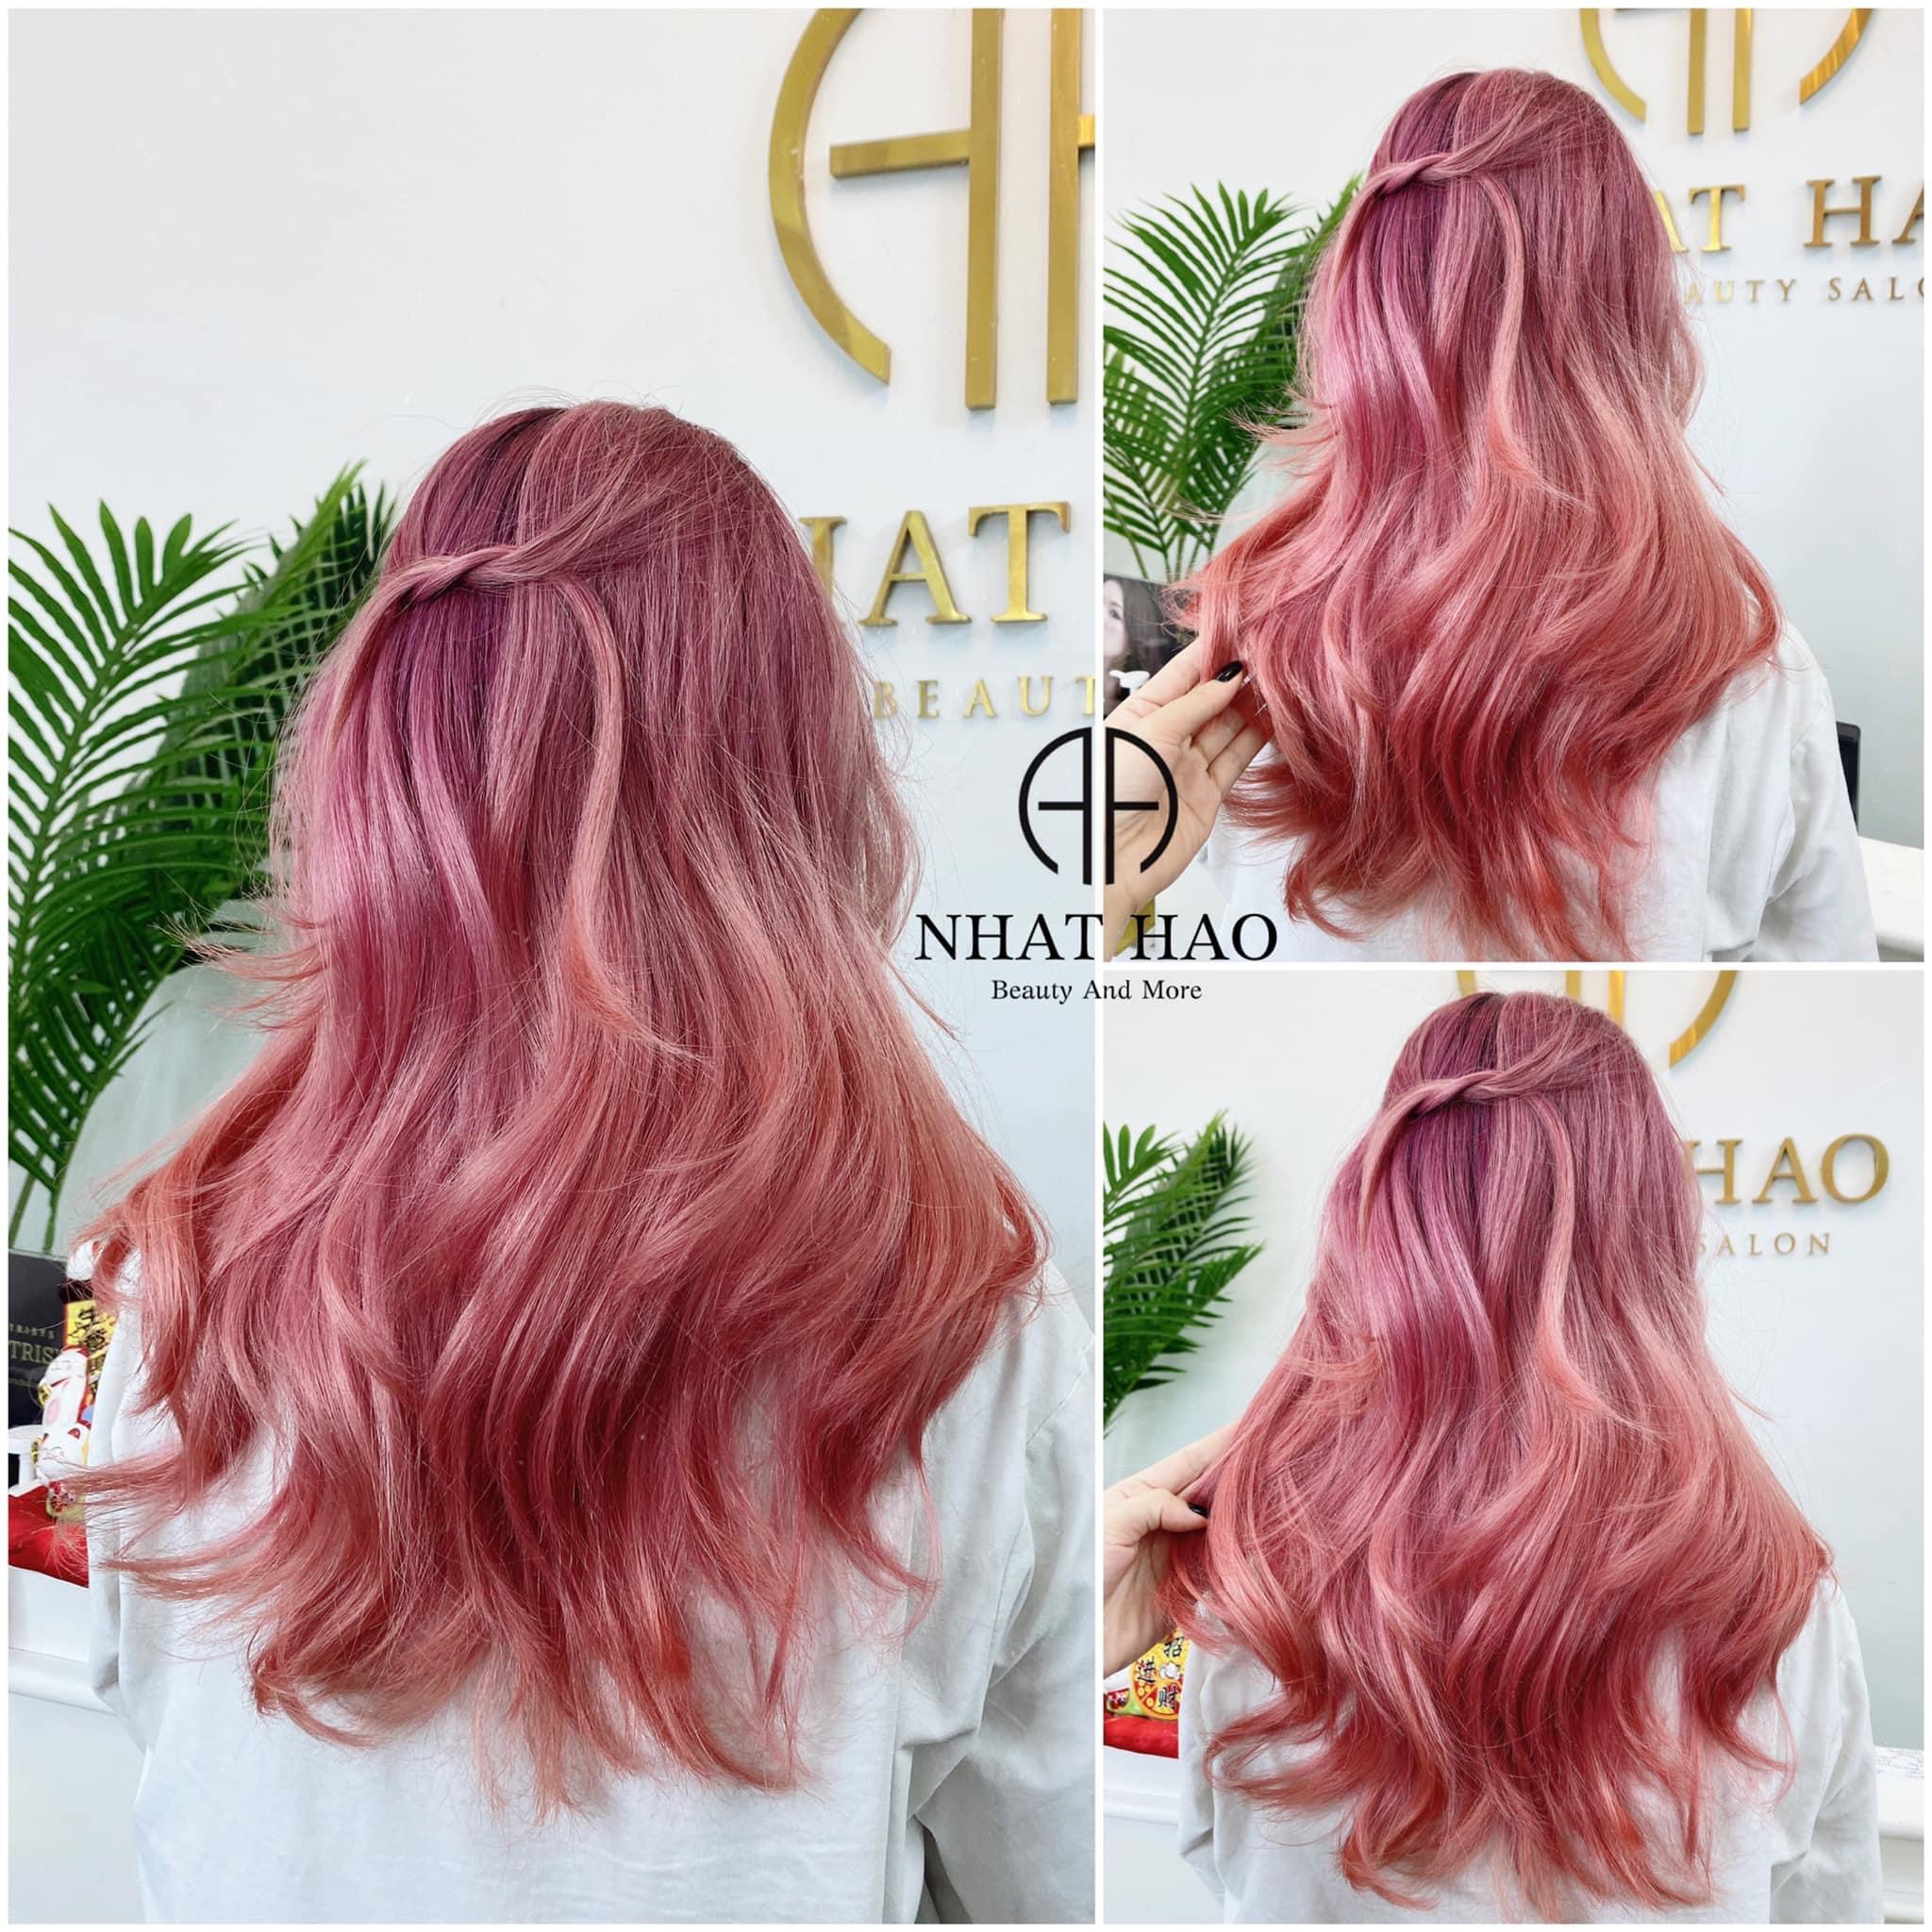 Nhuộm tóc màu Tím hồng sẽ giúp bạn trở nên quyến rũ và ngọt ngào hơn bao giờ hết. Đây là một trong những màu tóc được yêu thích nhất trong năm nay và không có gì ngạc nhiên khi nhận thấy cộng đồng mạng đang rần rần chia sẻ những hình ảnh về màu tóc này.